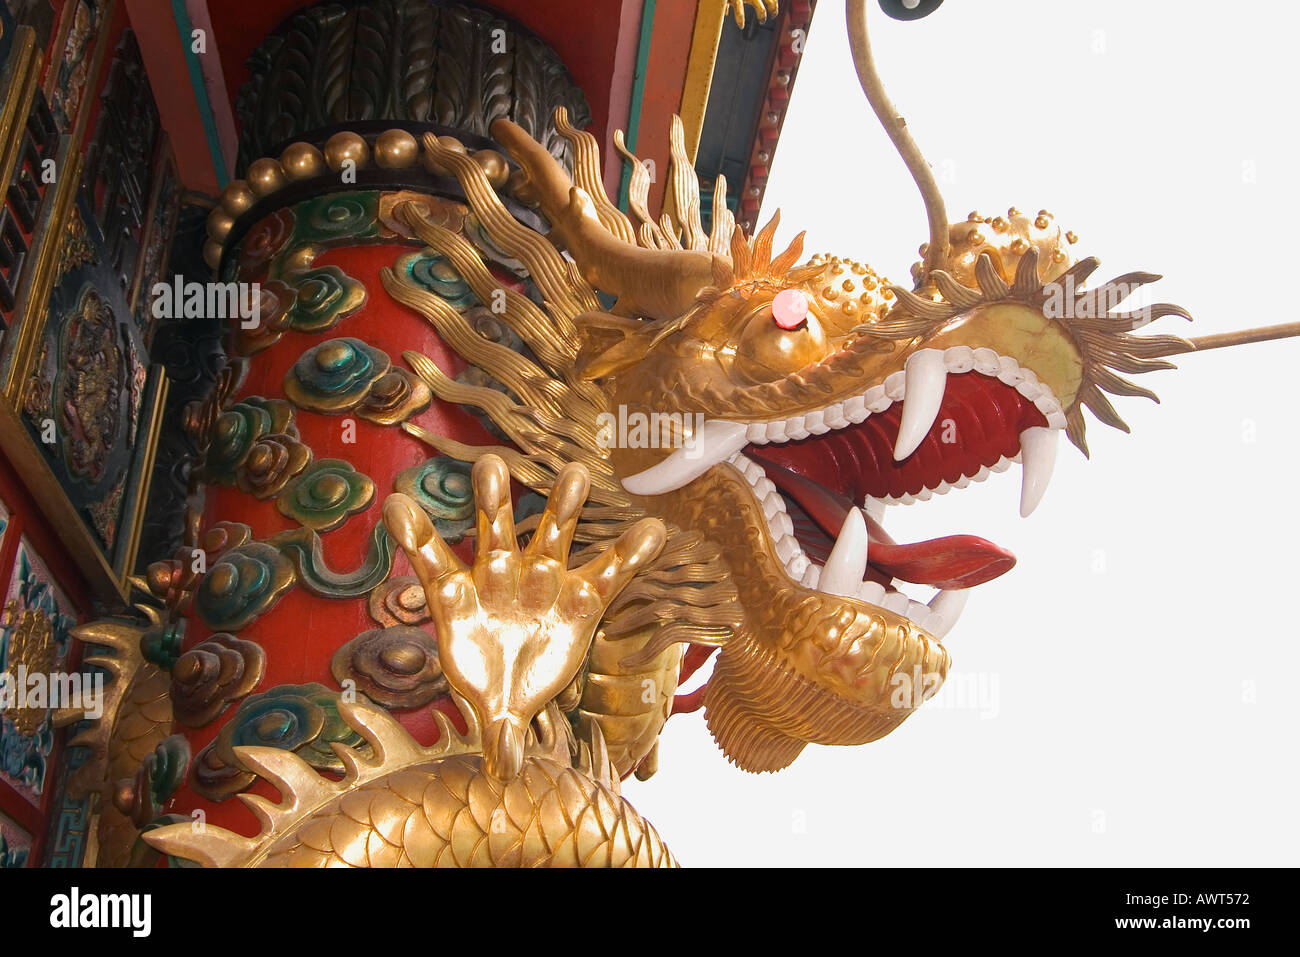 Objek Wisata Hongkong Jumbo Dragon